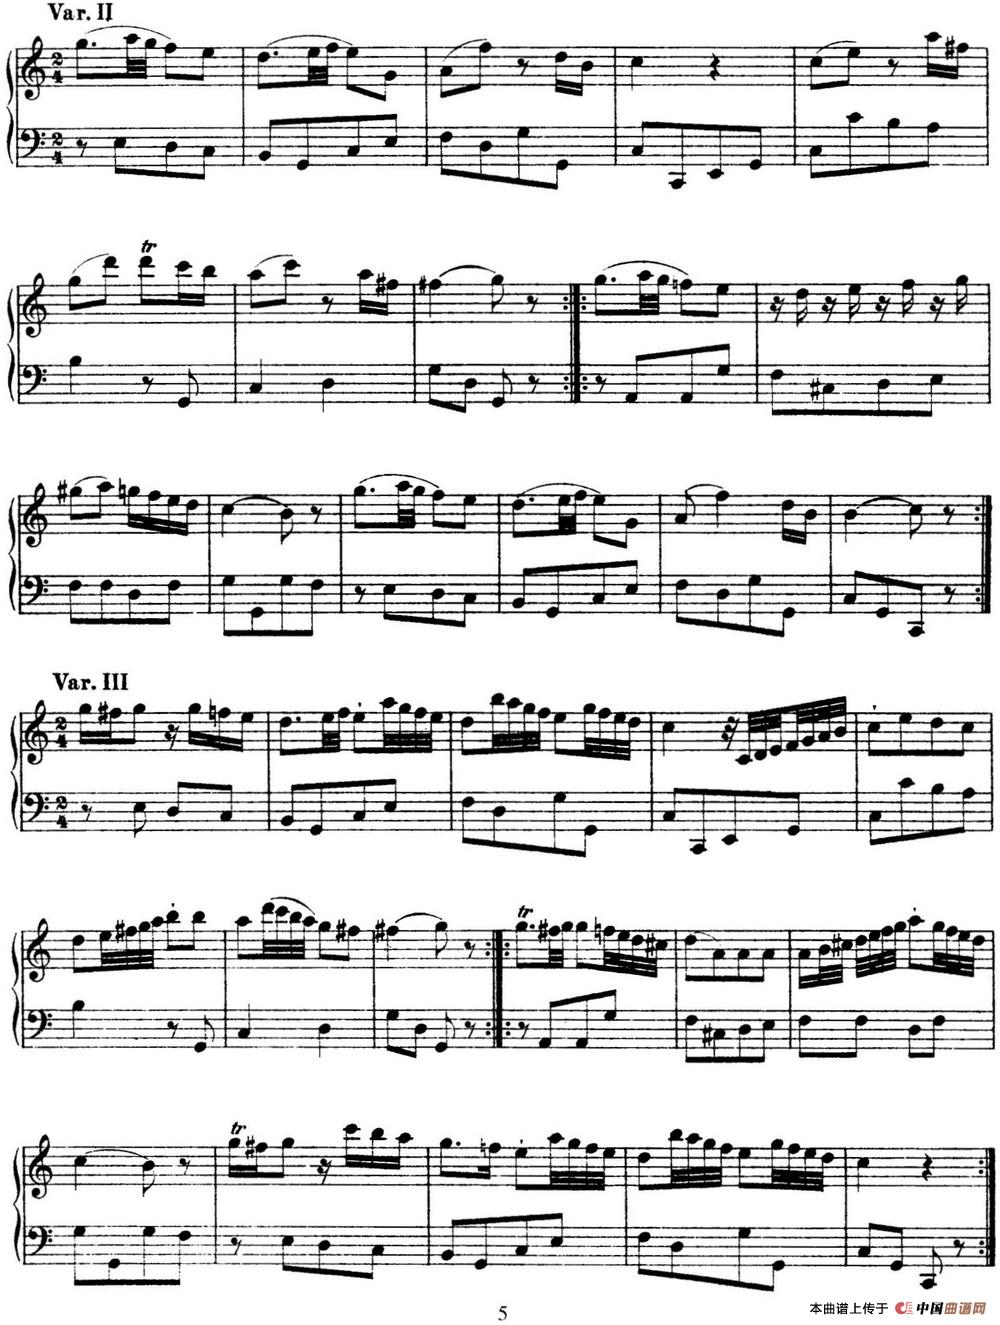 《海顿 钢琴奏鸣曲 Hob XVI 15 in C major》钢琴曲谱图分享